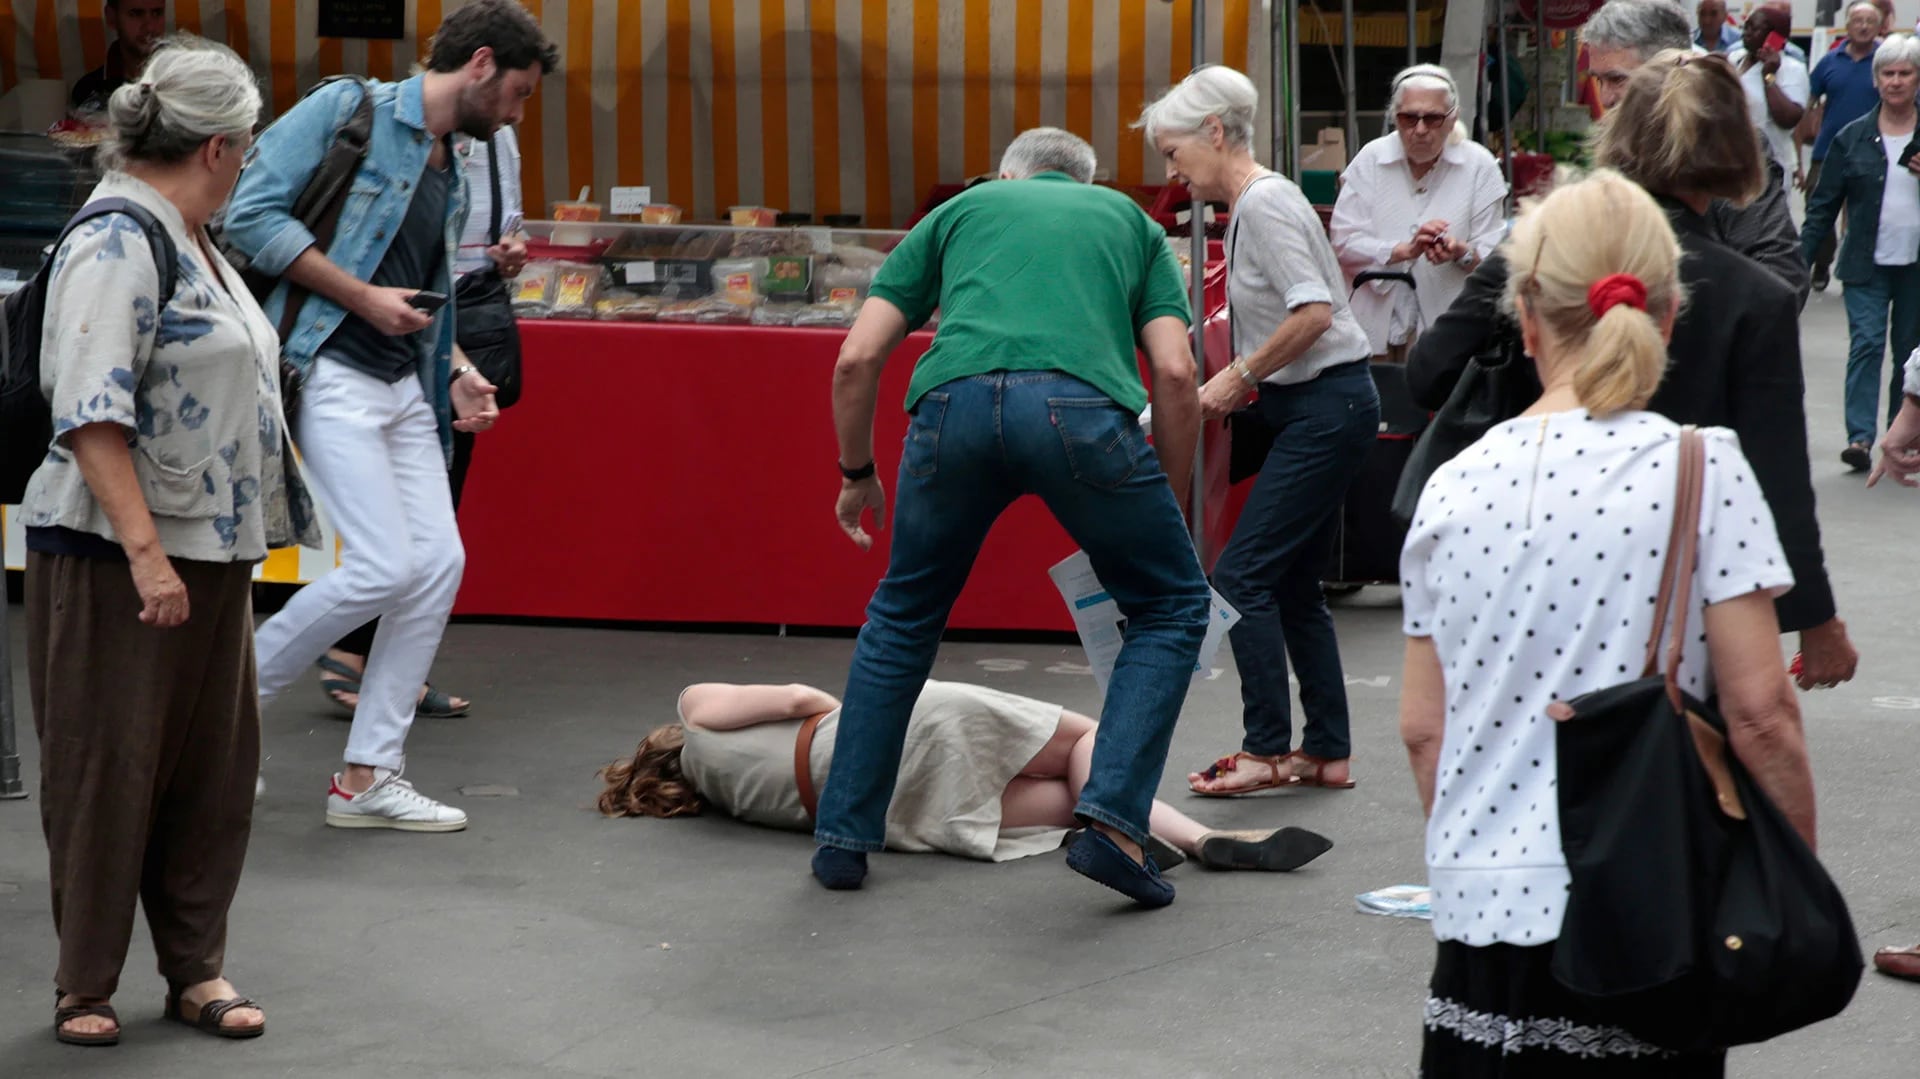 Kosciusko Morizet cayó al piso inconsciente (AFP)